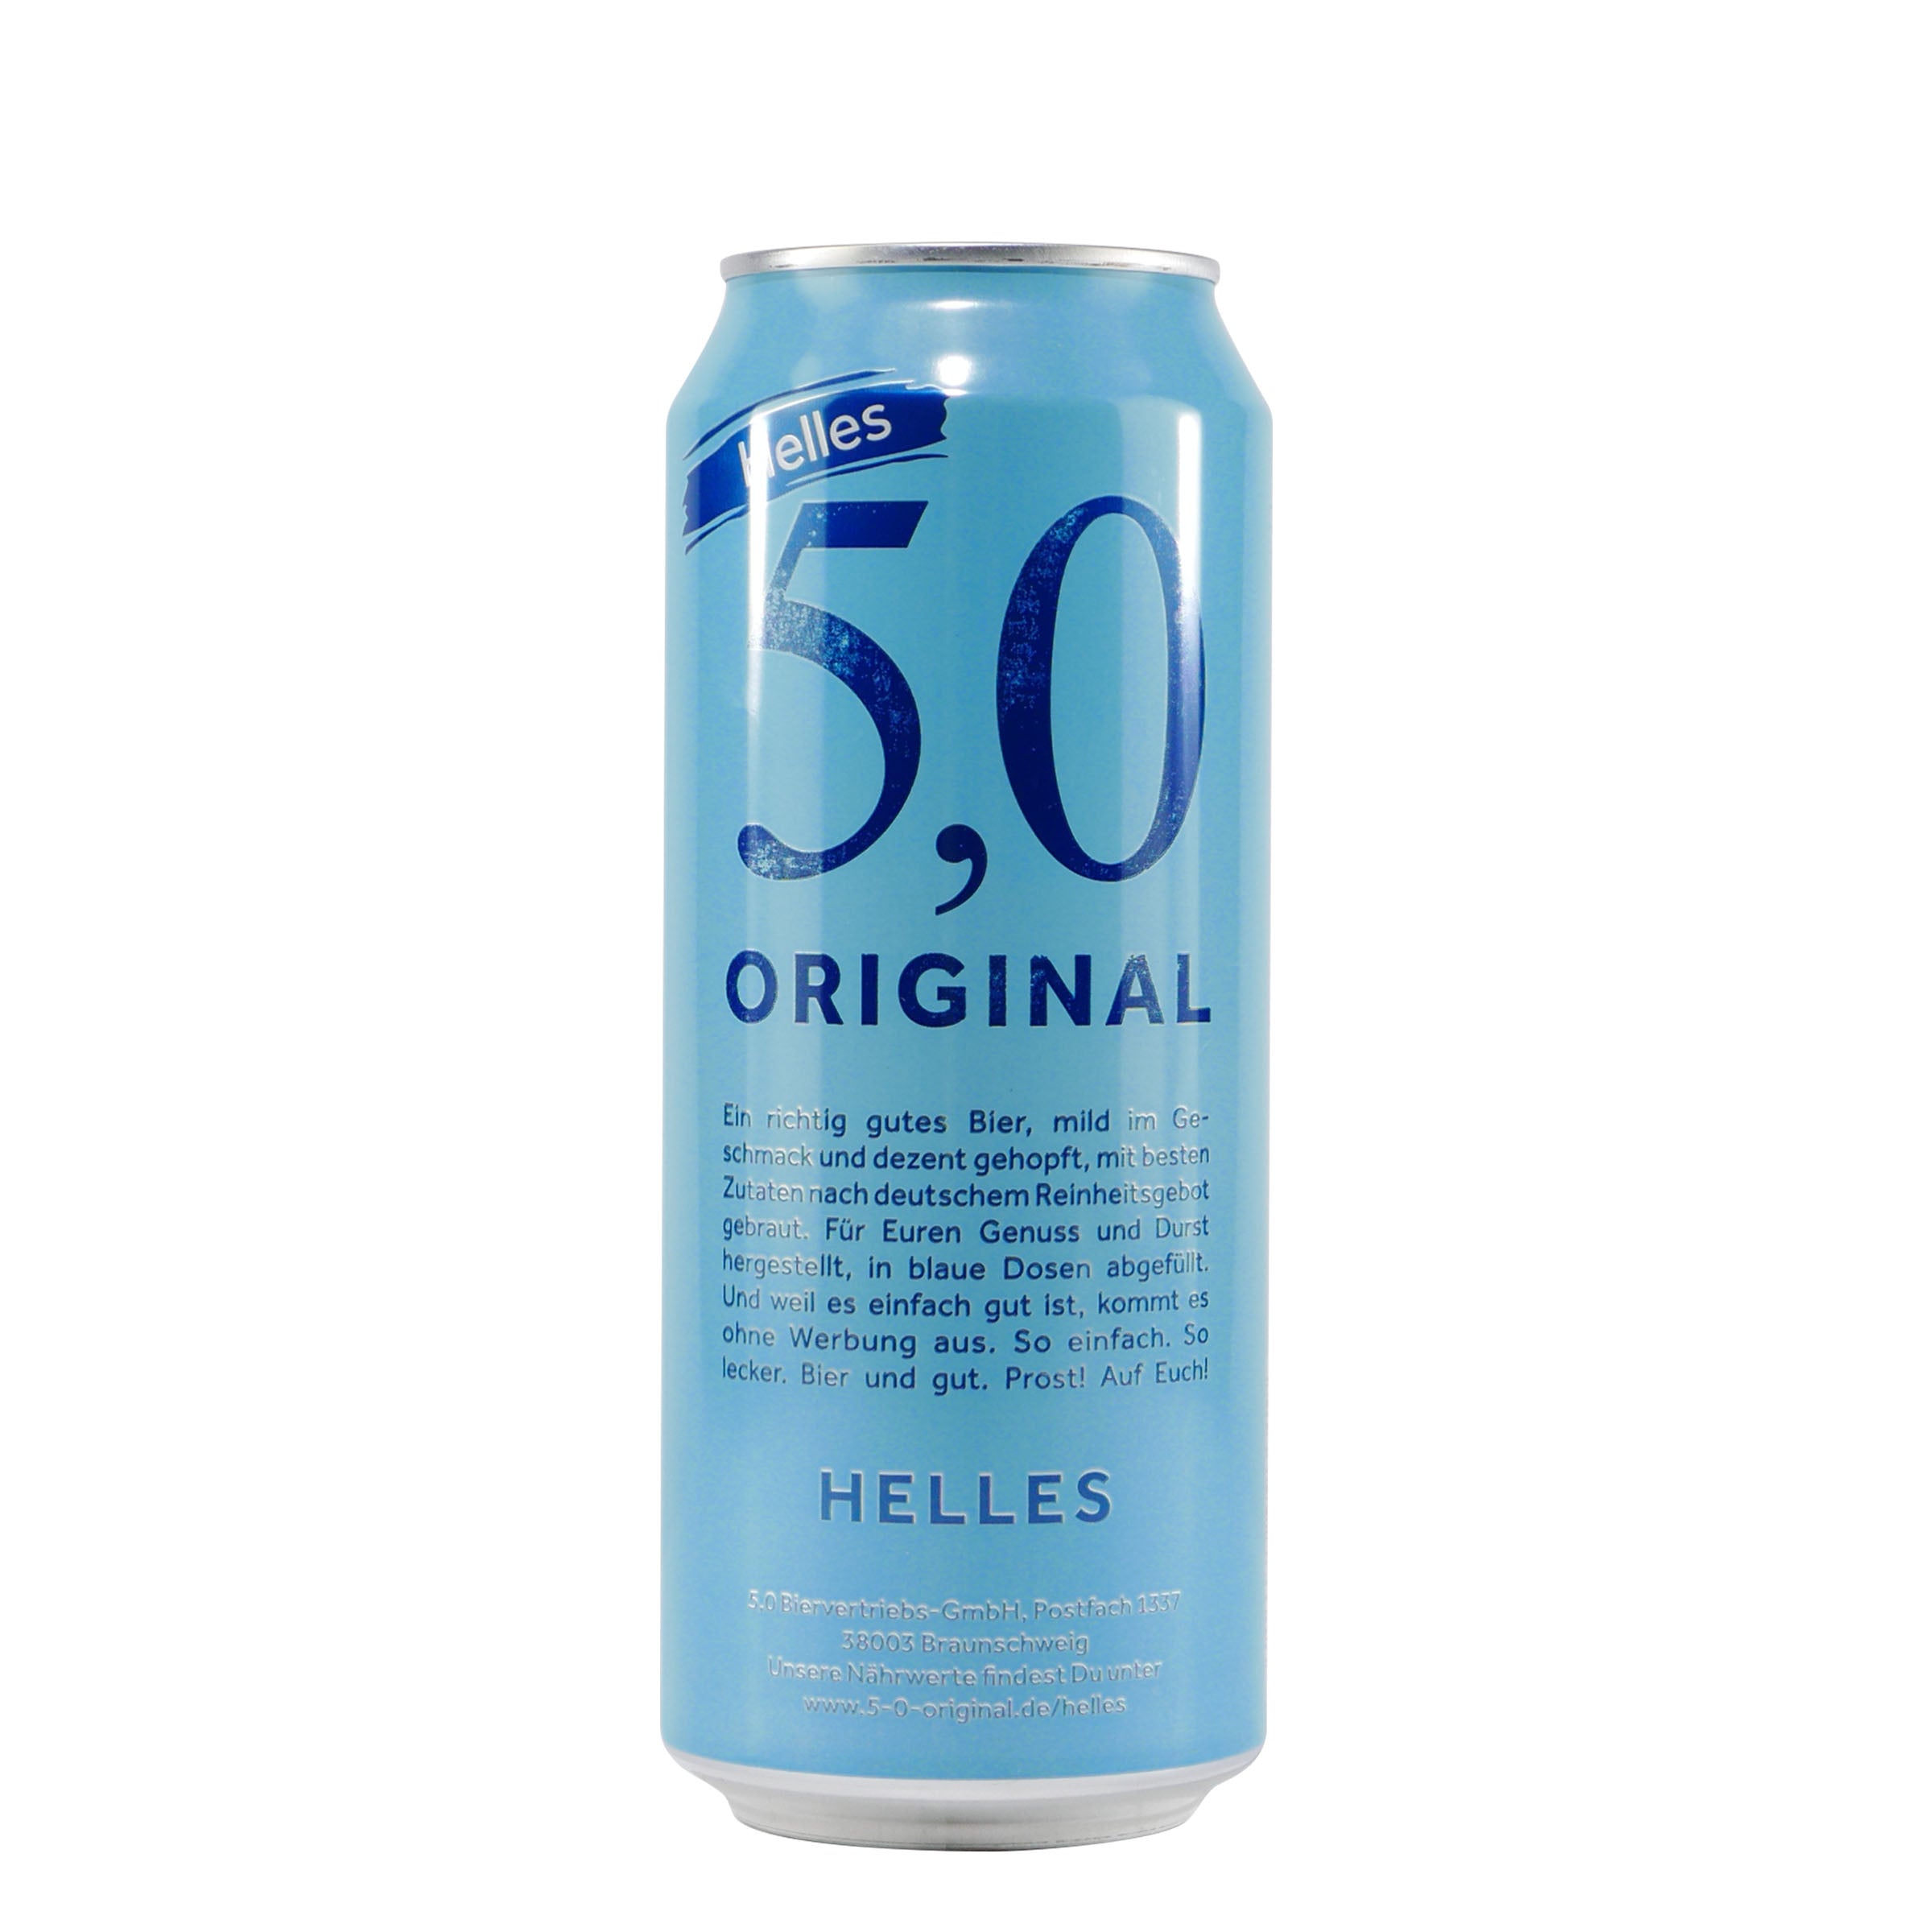 5.0 Original Helles (24 x 0,5L)